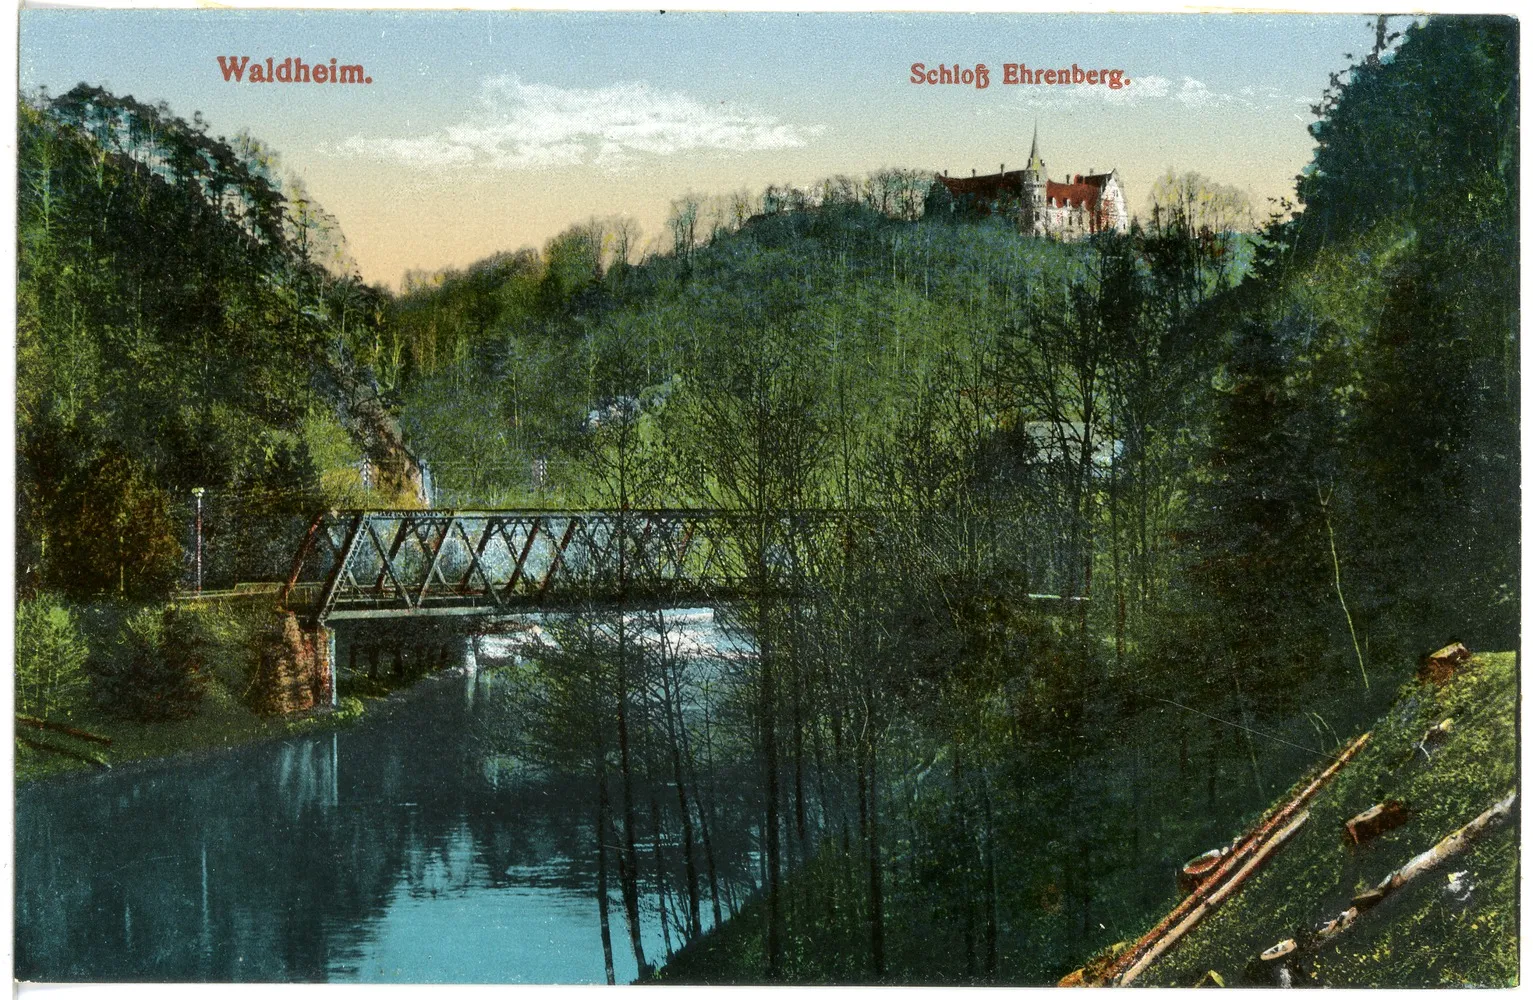 Photo showing: Waldheim; Schloß Ehrenberg